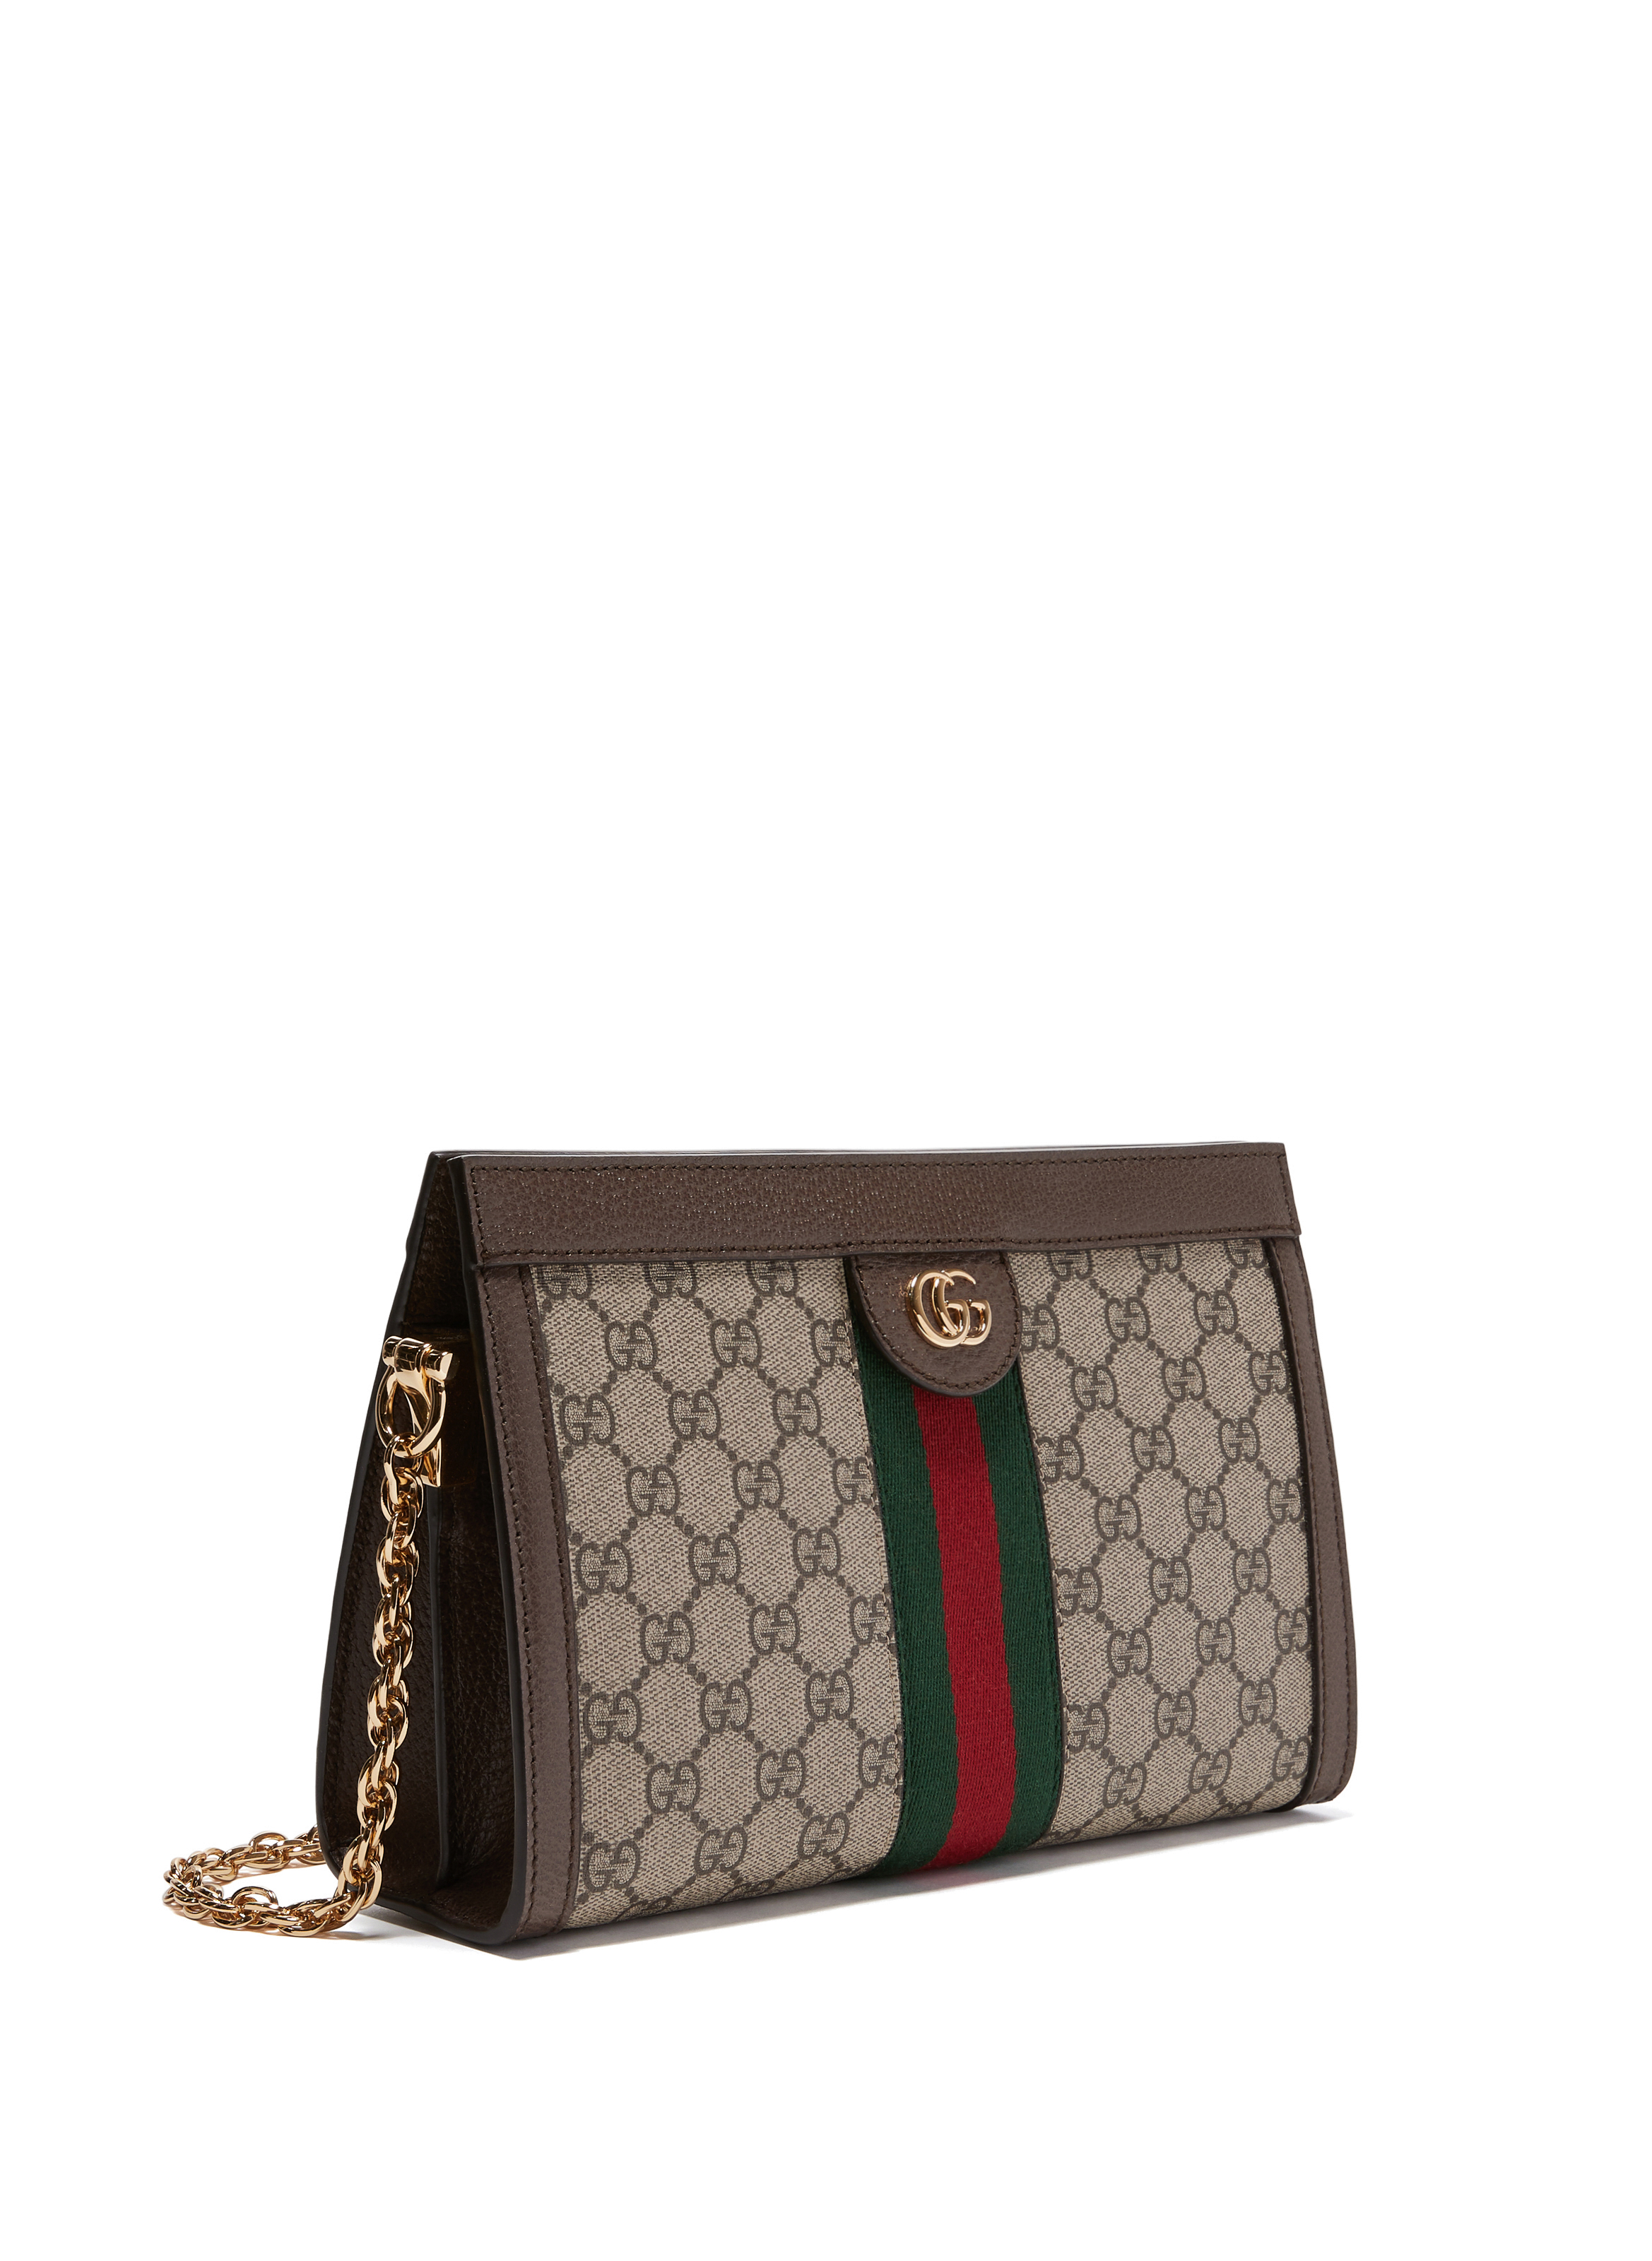 GUCCI Limited Edition BLONDIE BRITT TASSEL COPPER GOLG Handbag NEIMAN MARCUS   eBay